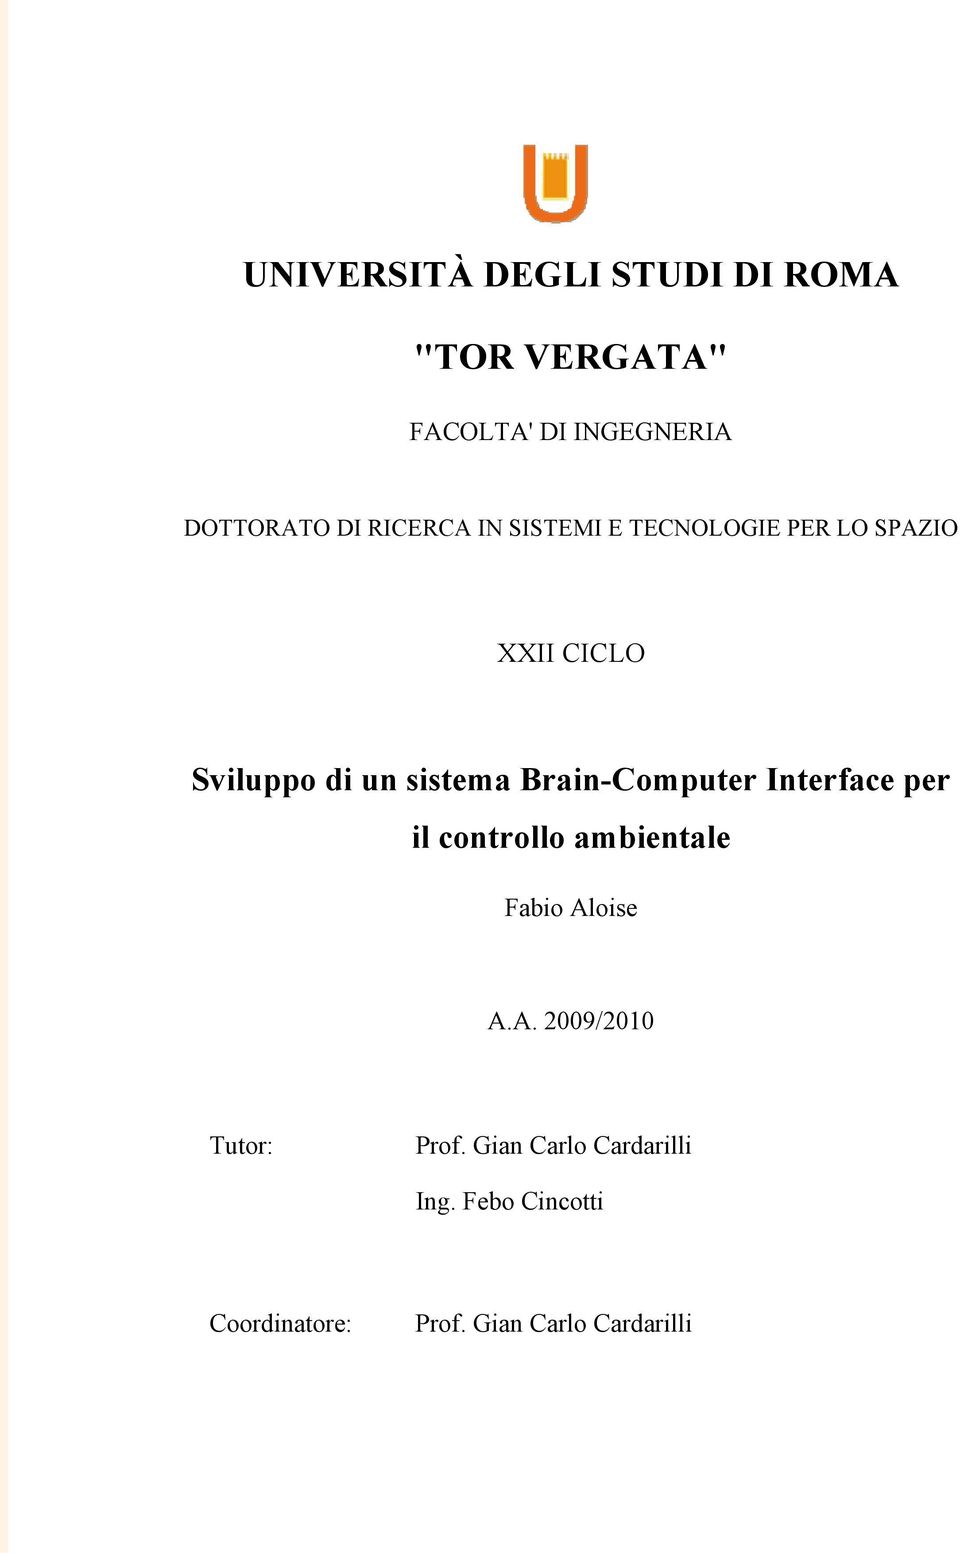 Brain-Computer Interface per il controllo ambientale Fabio Aloise A.A. 2009/2010 Tutor: Prof.